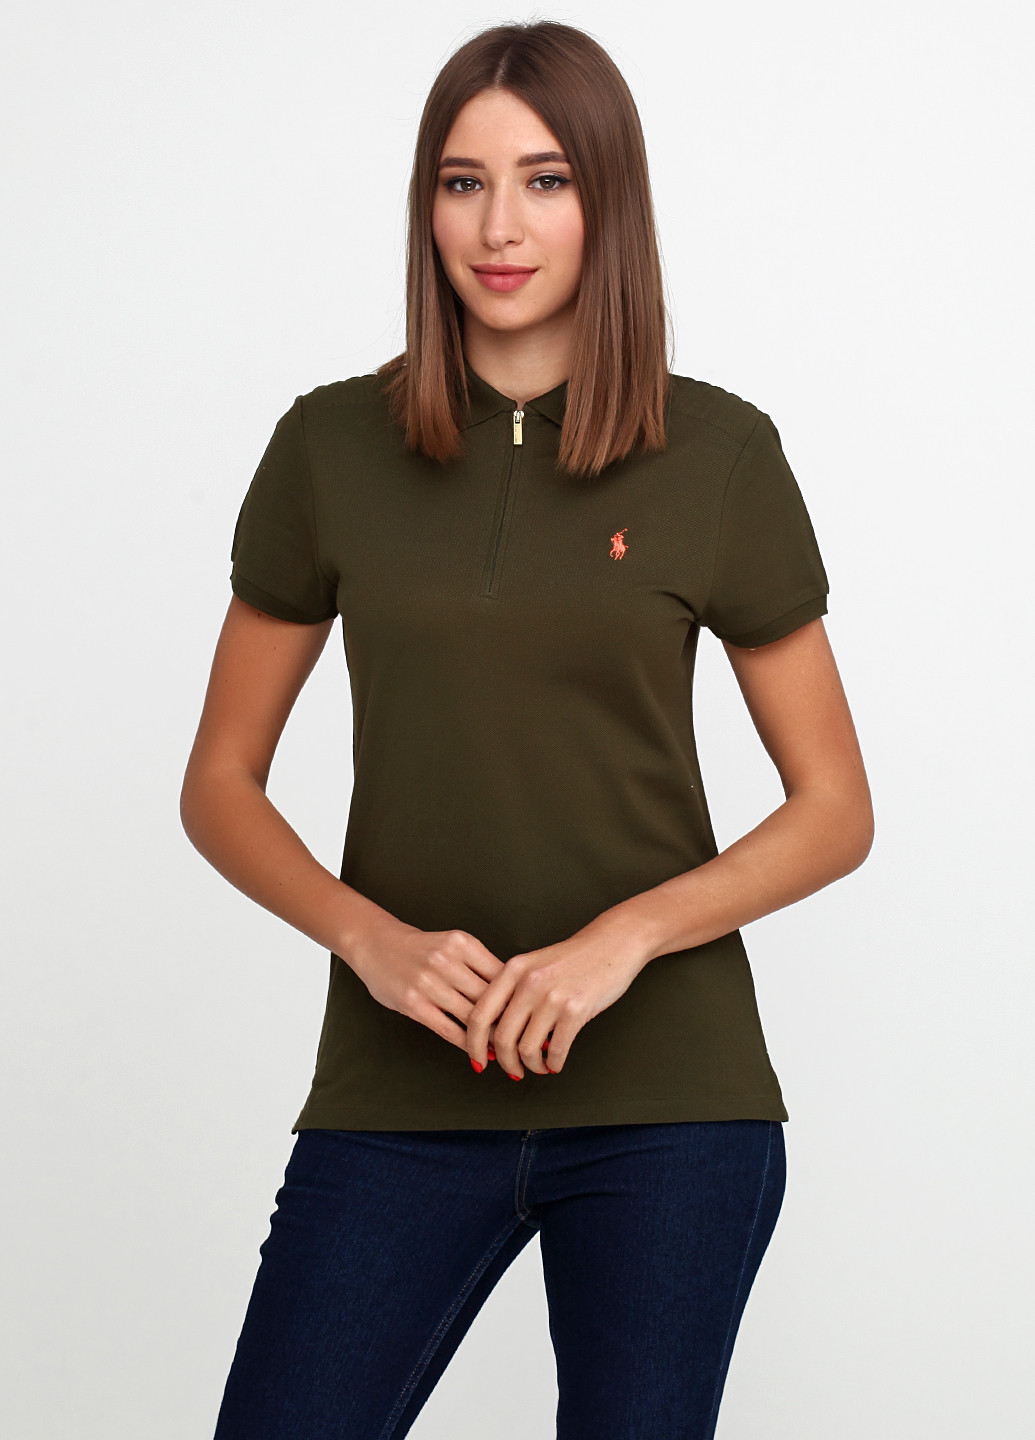 Оливковая женская футболка-поло Ralph Lauren с логотипом